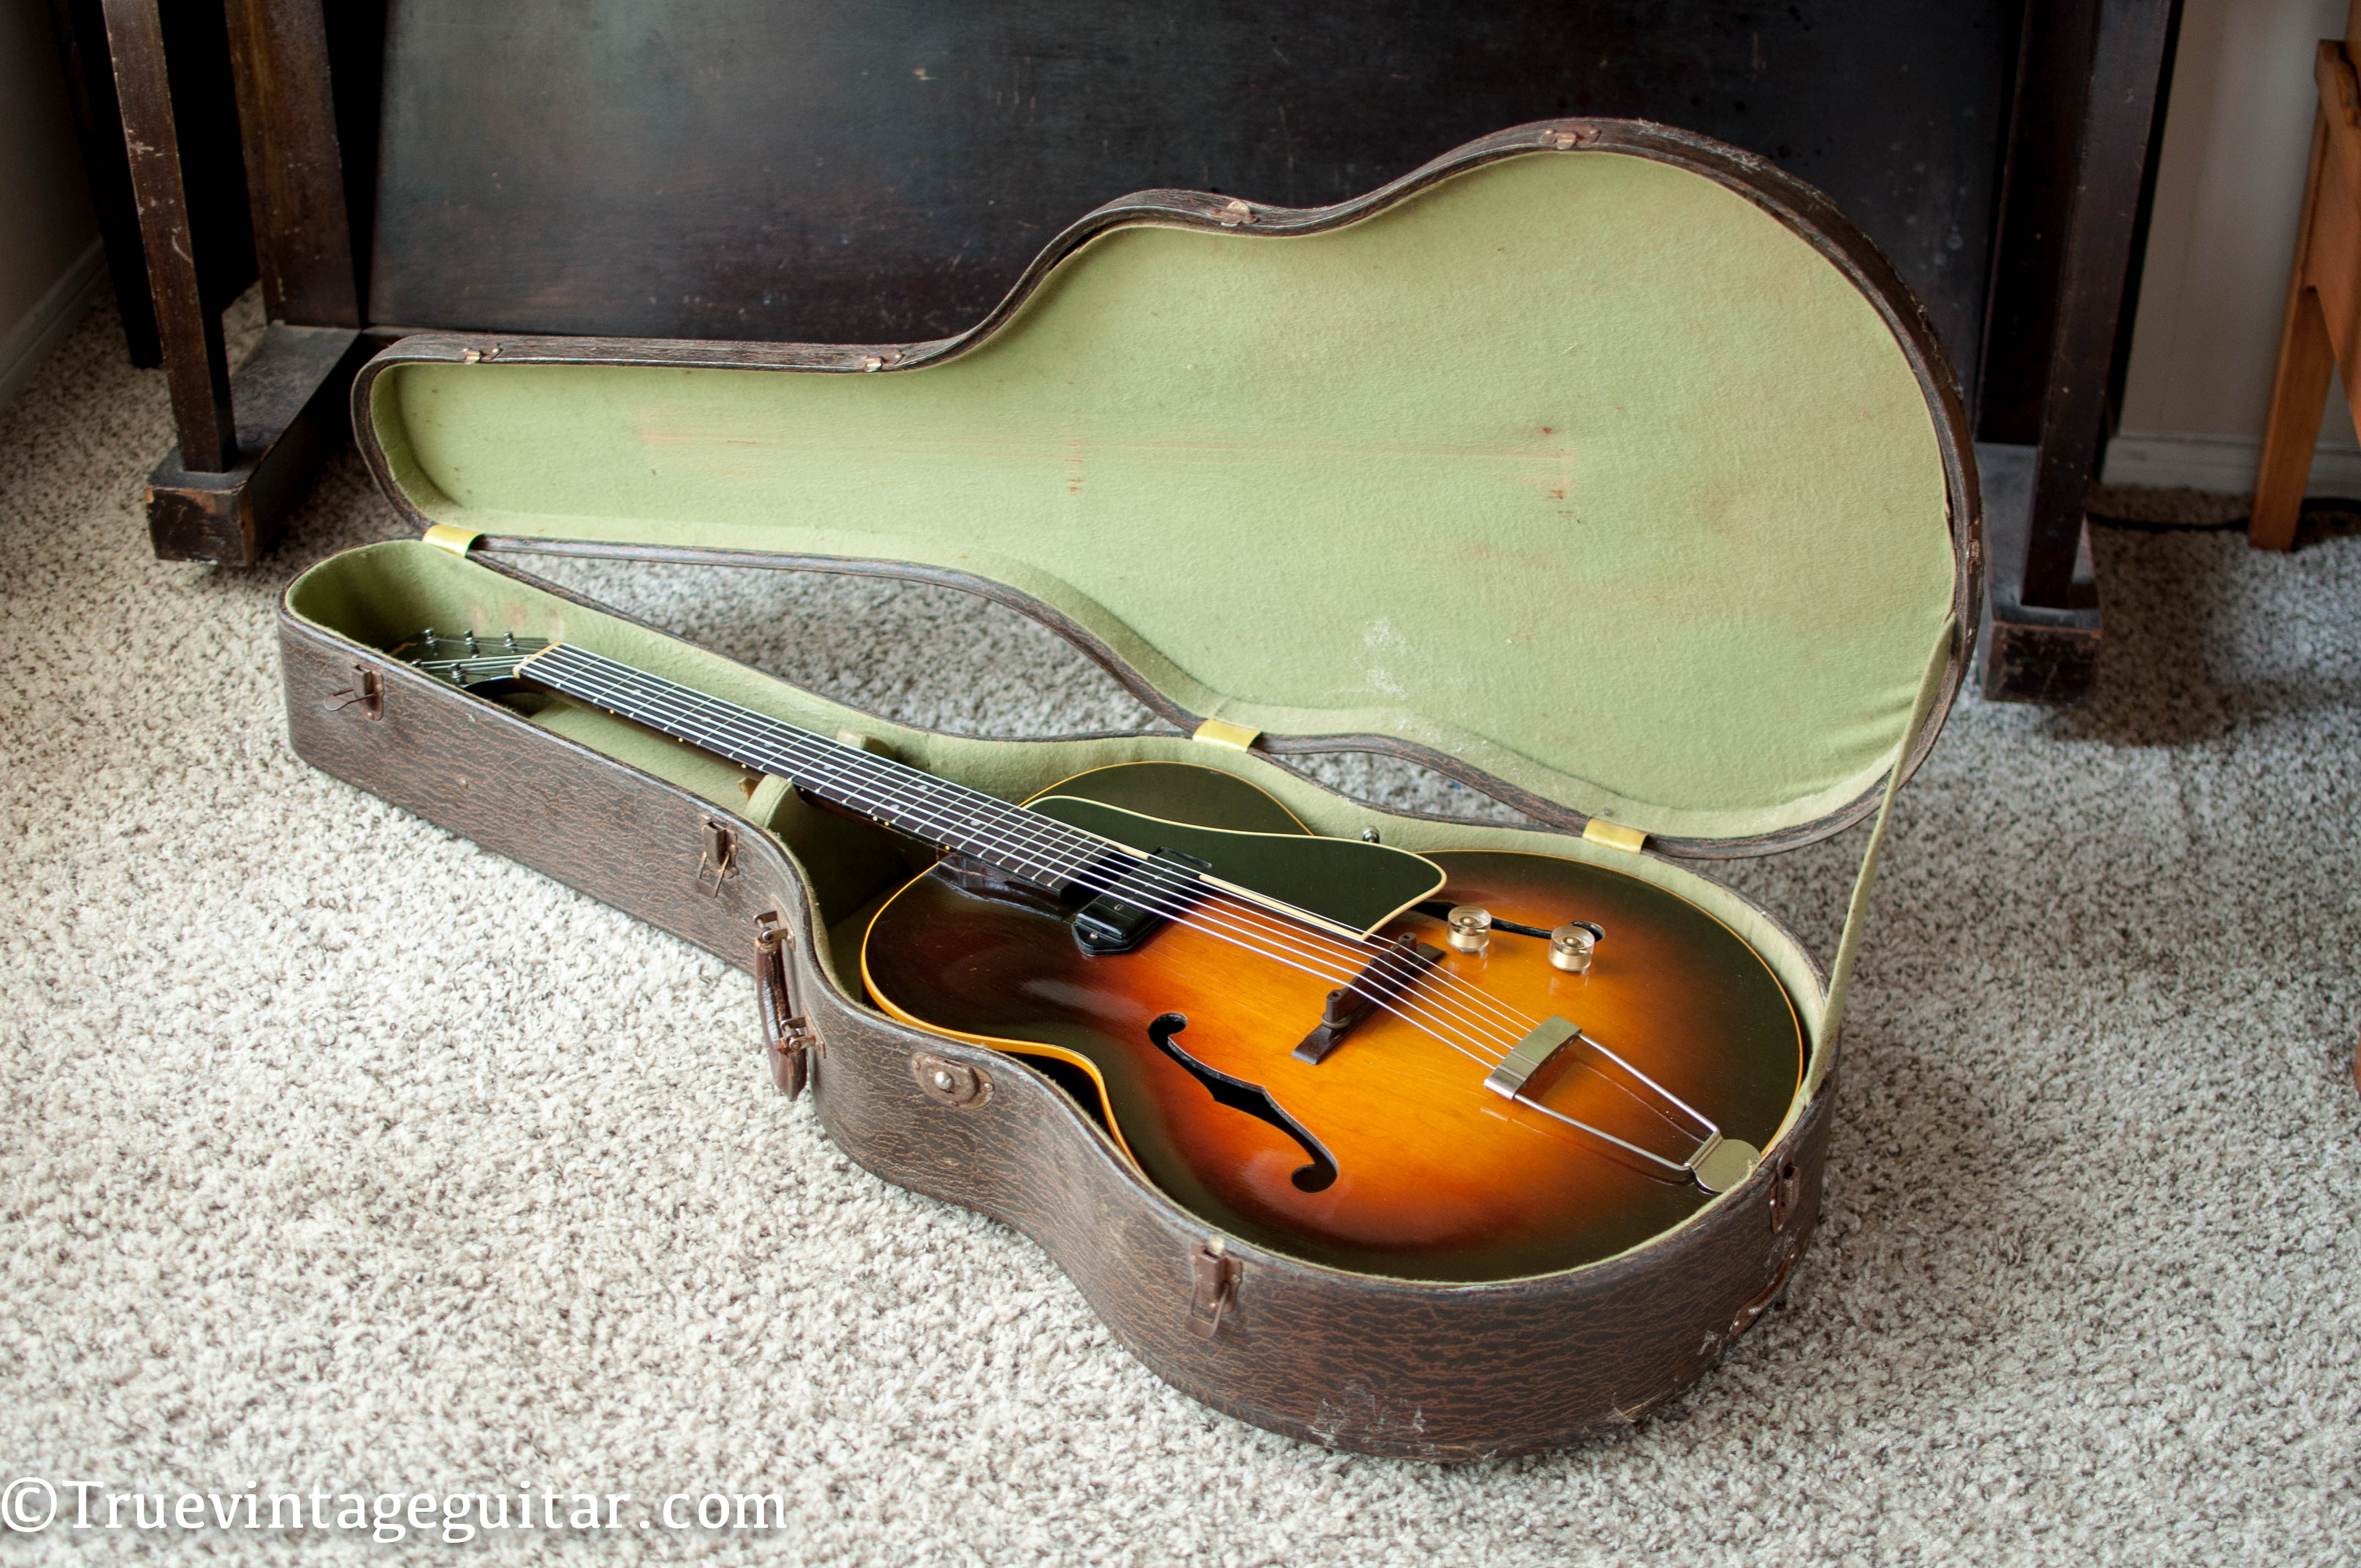 1948 Gibson ES-150 guitar original Lifton hard shell case